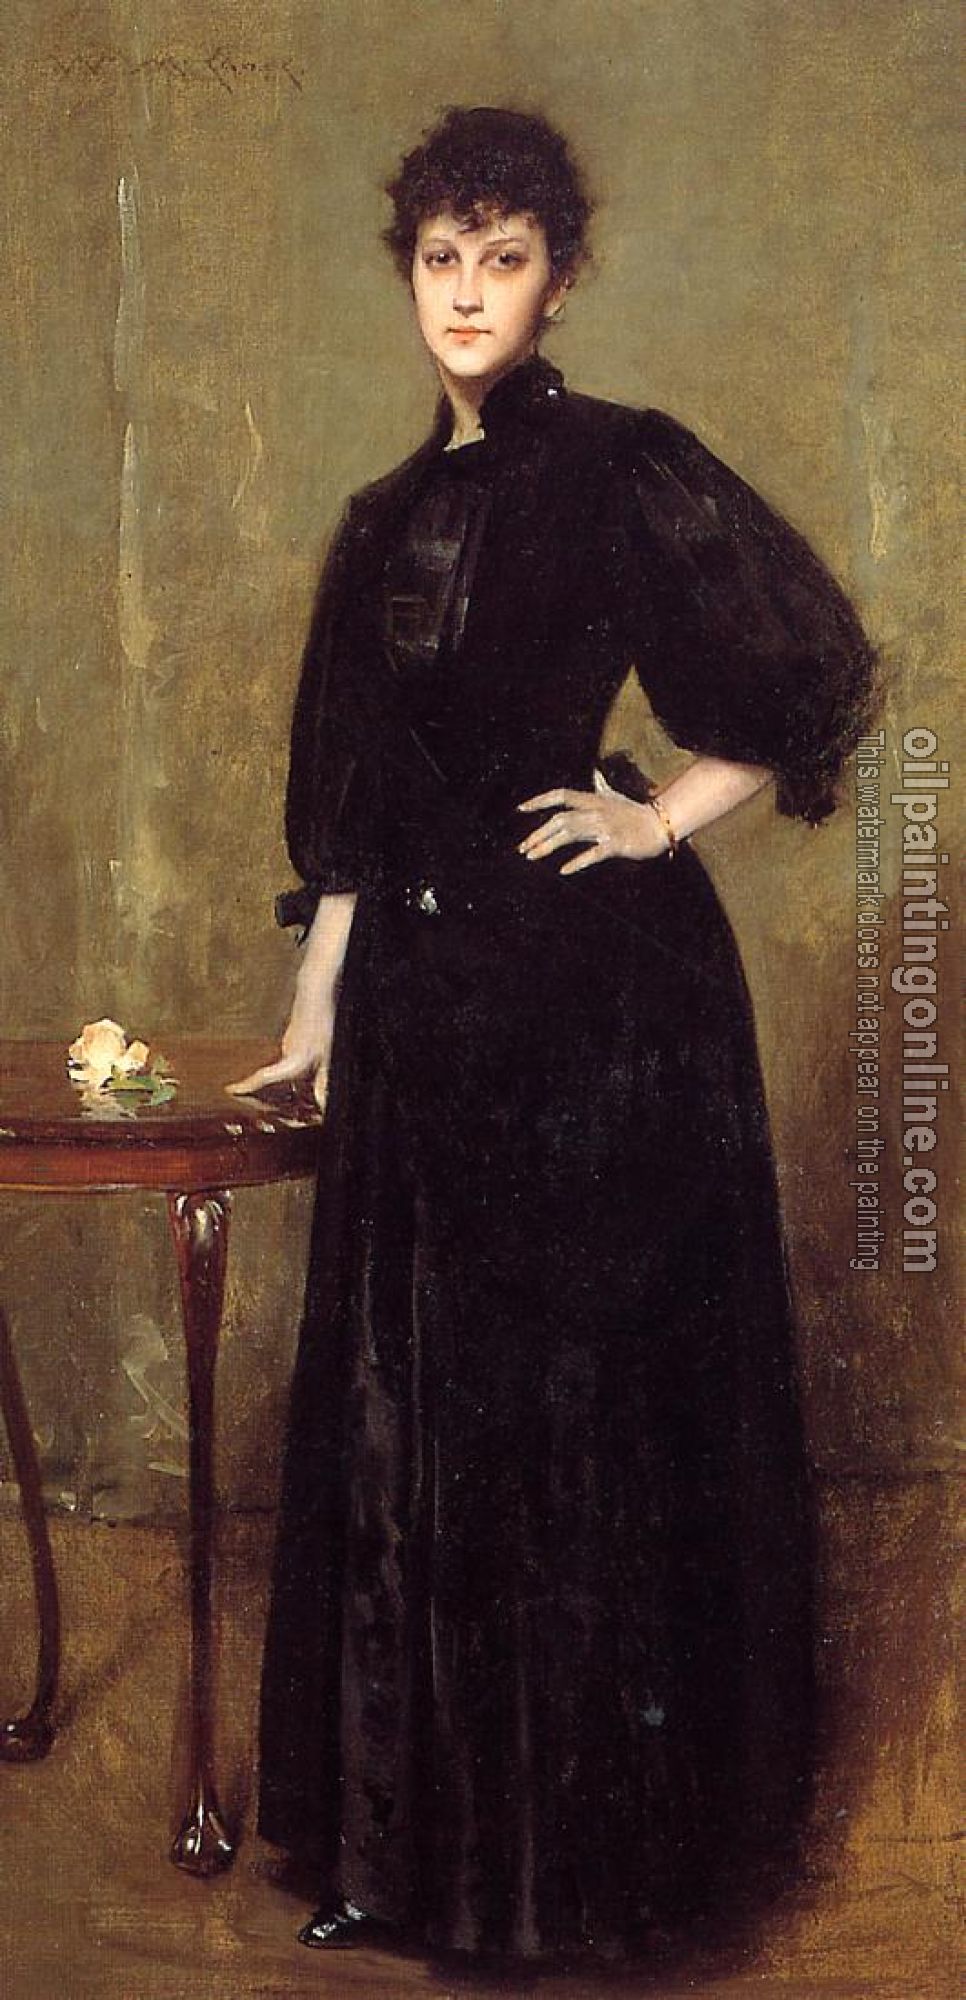 Chase, William Merritt - Lady in Black aka Mrs Leslie Cotton